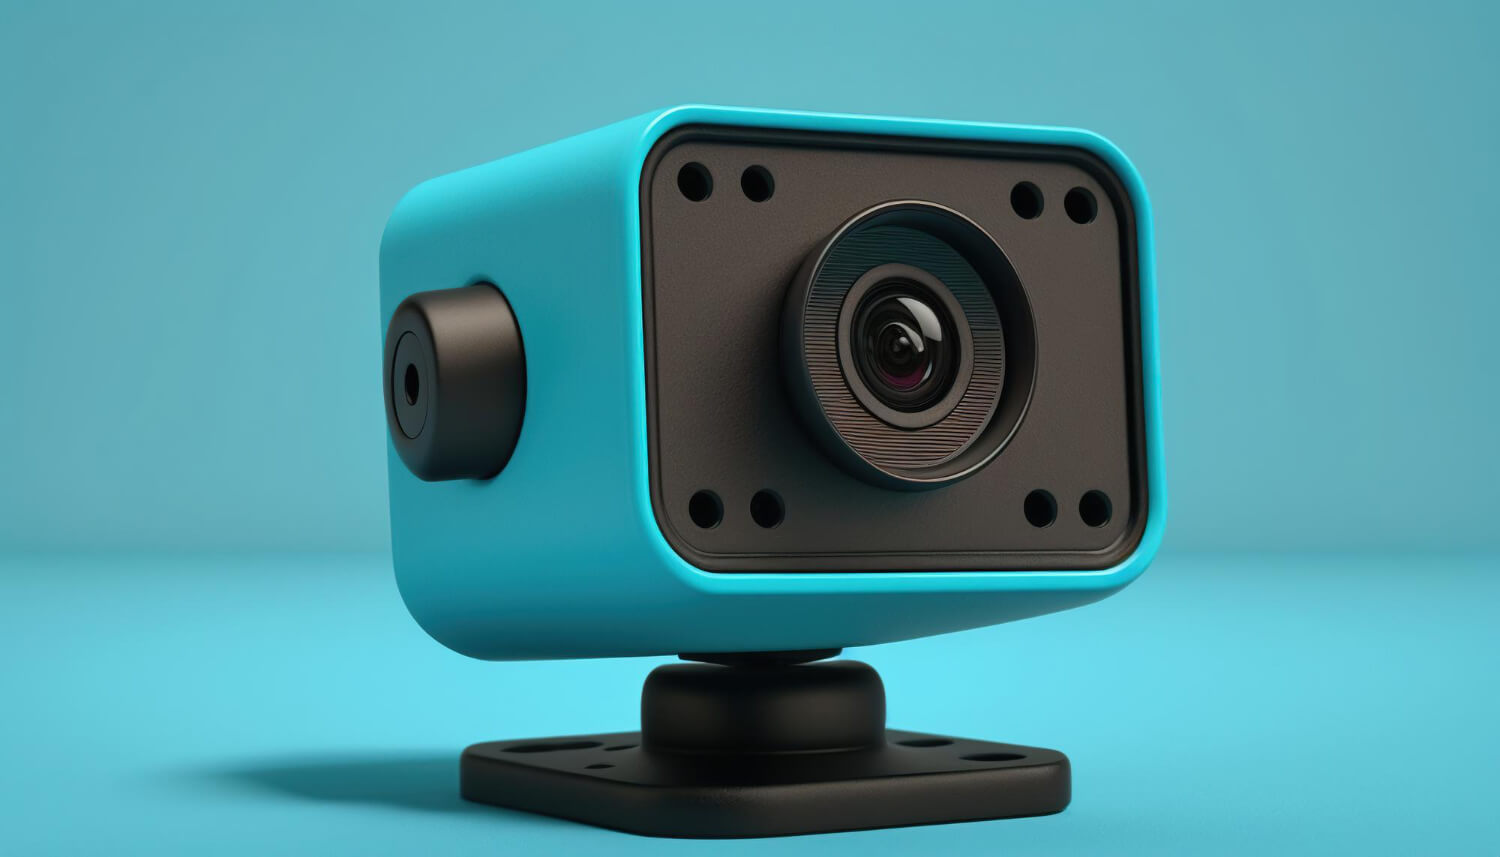 webkamera